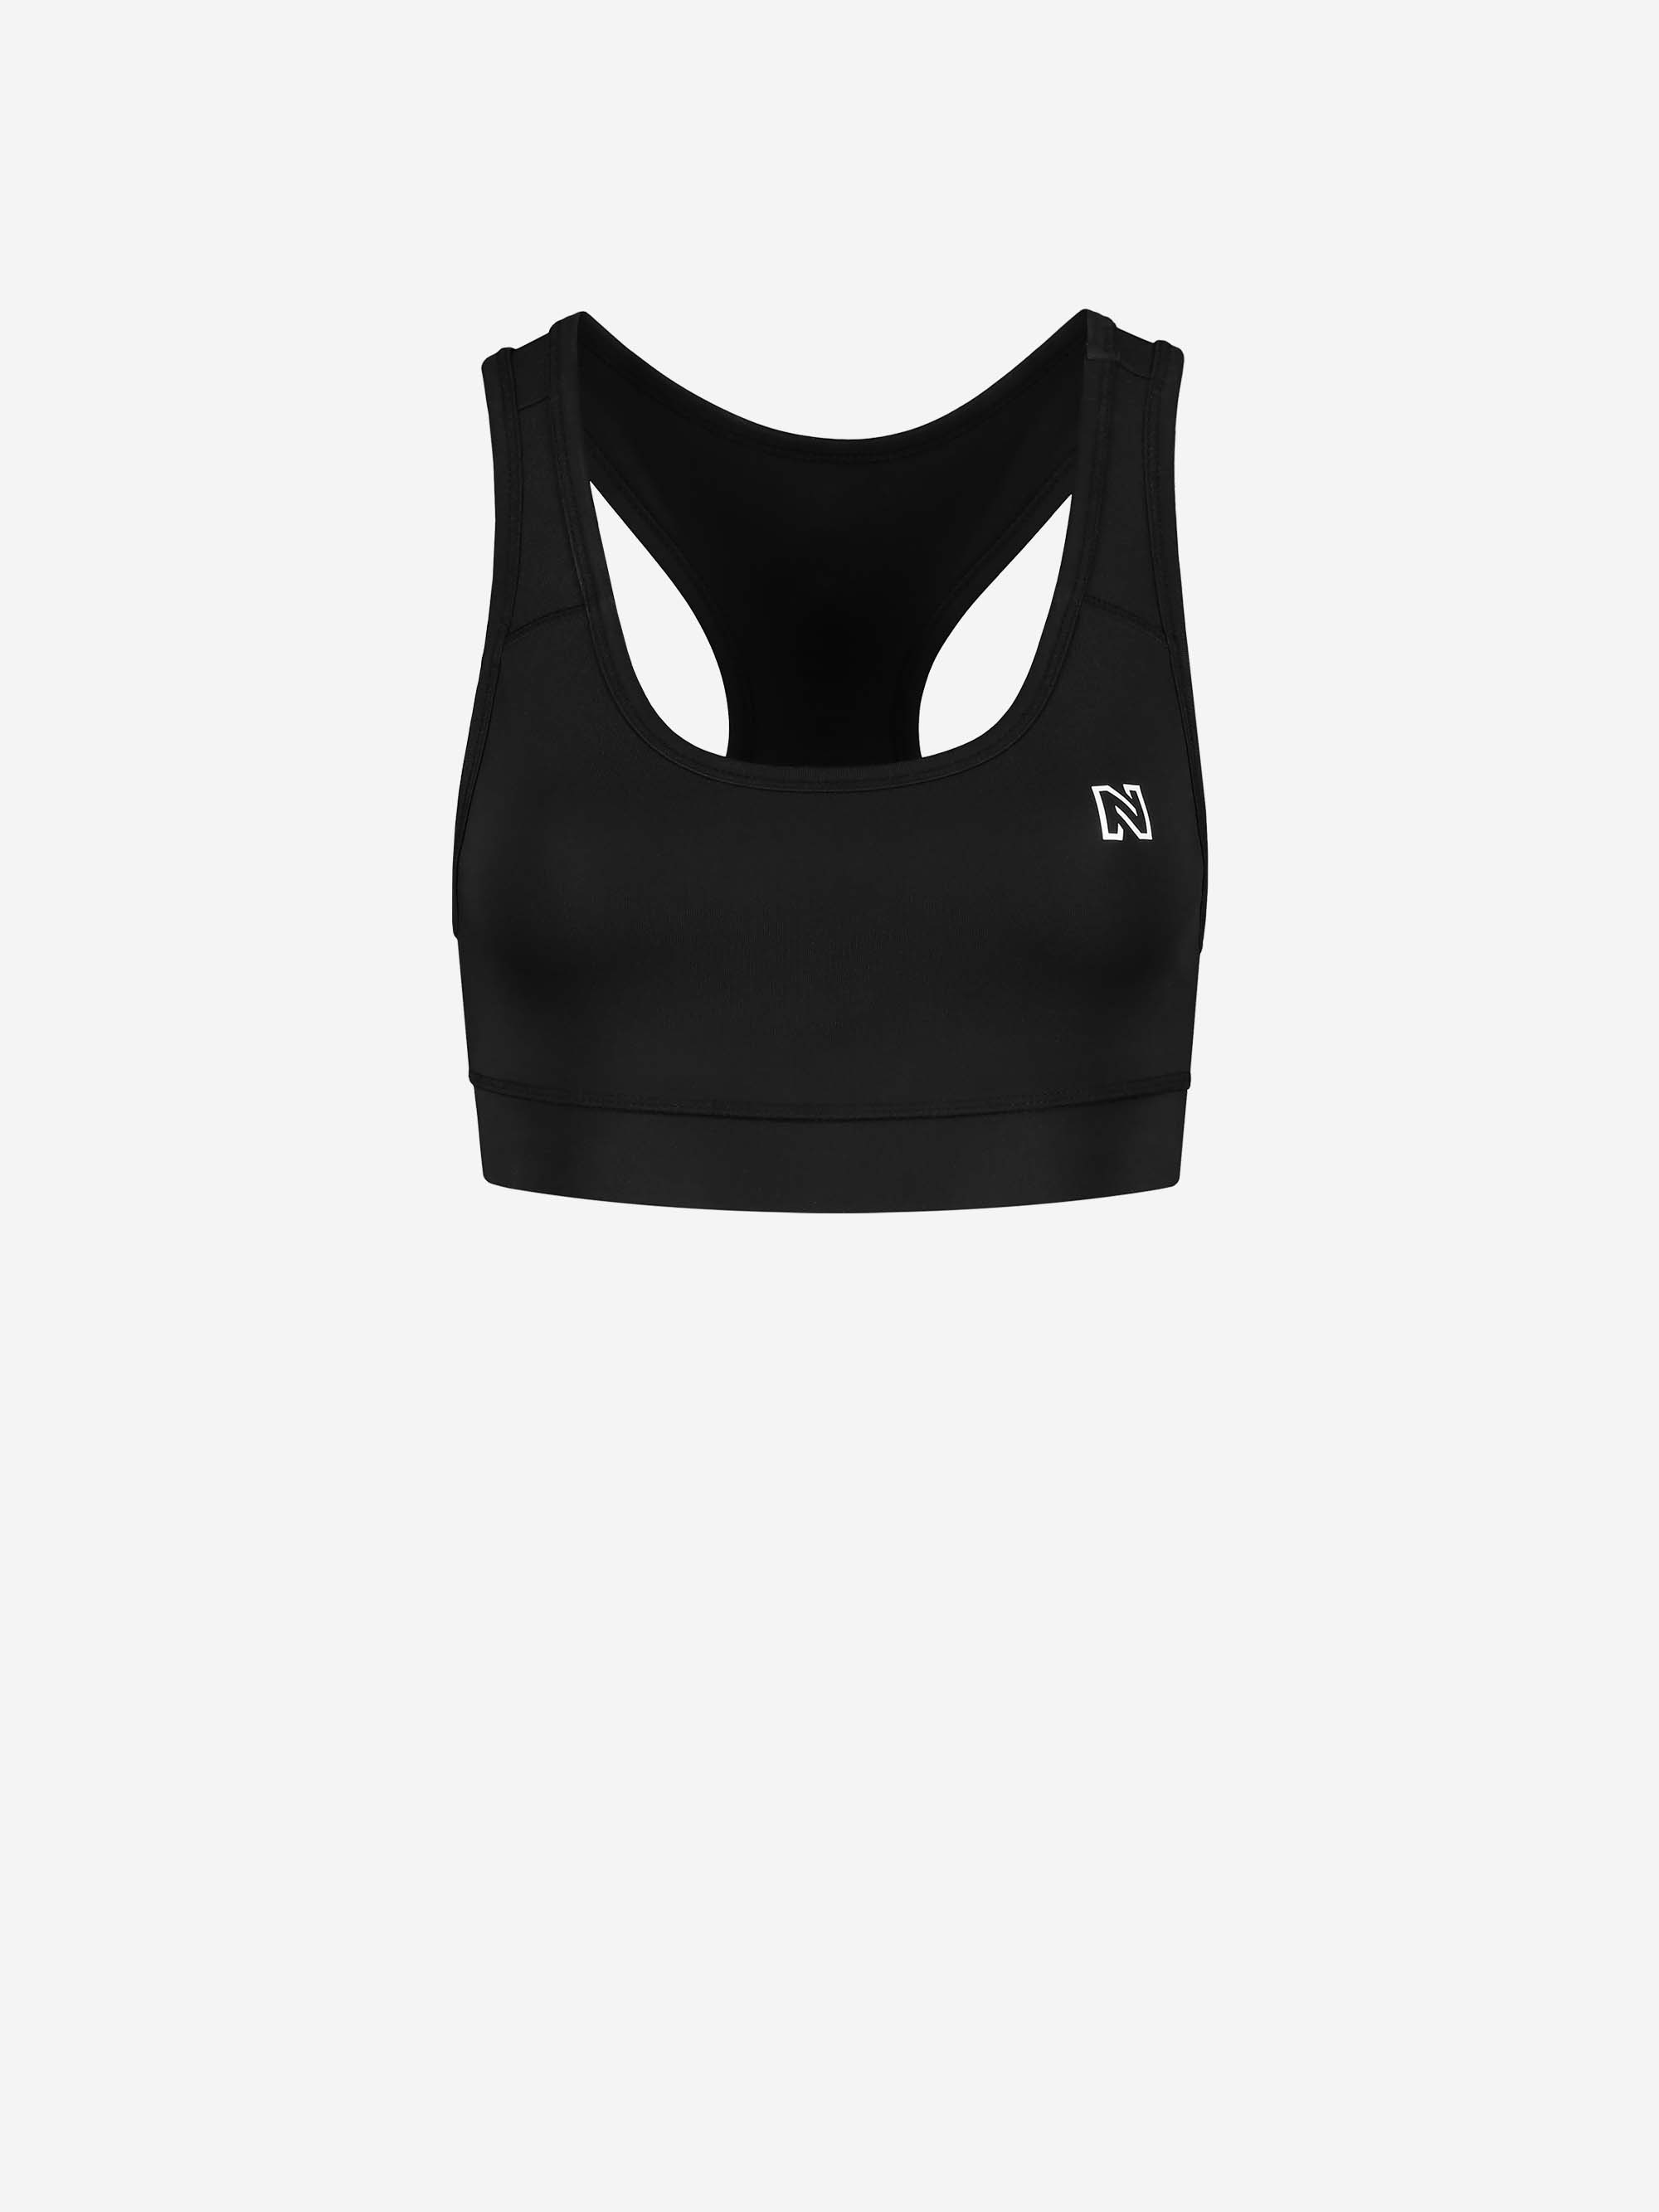 Sports bra with N logo